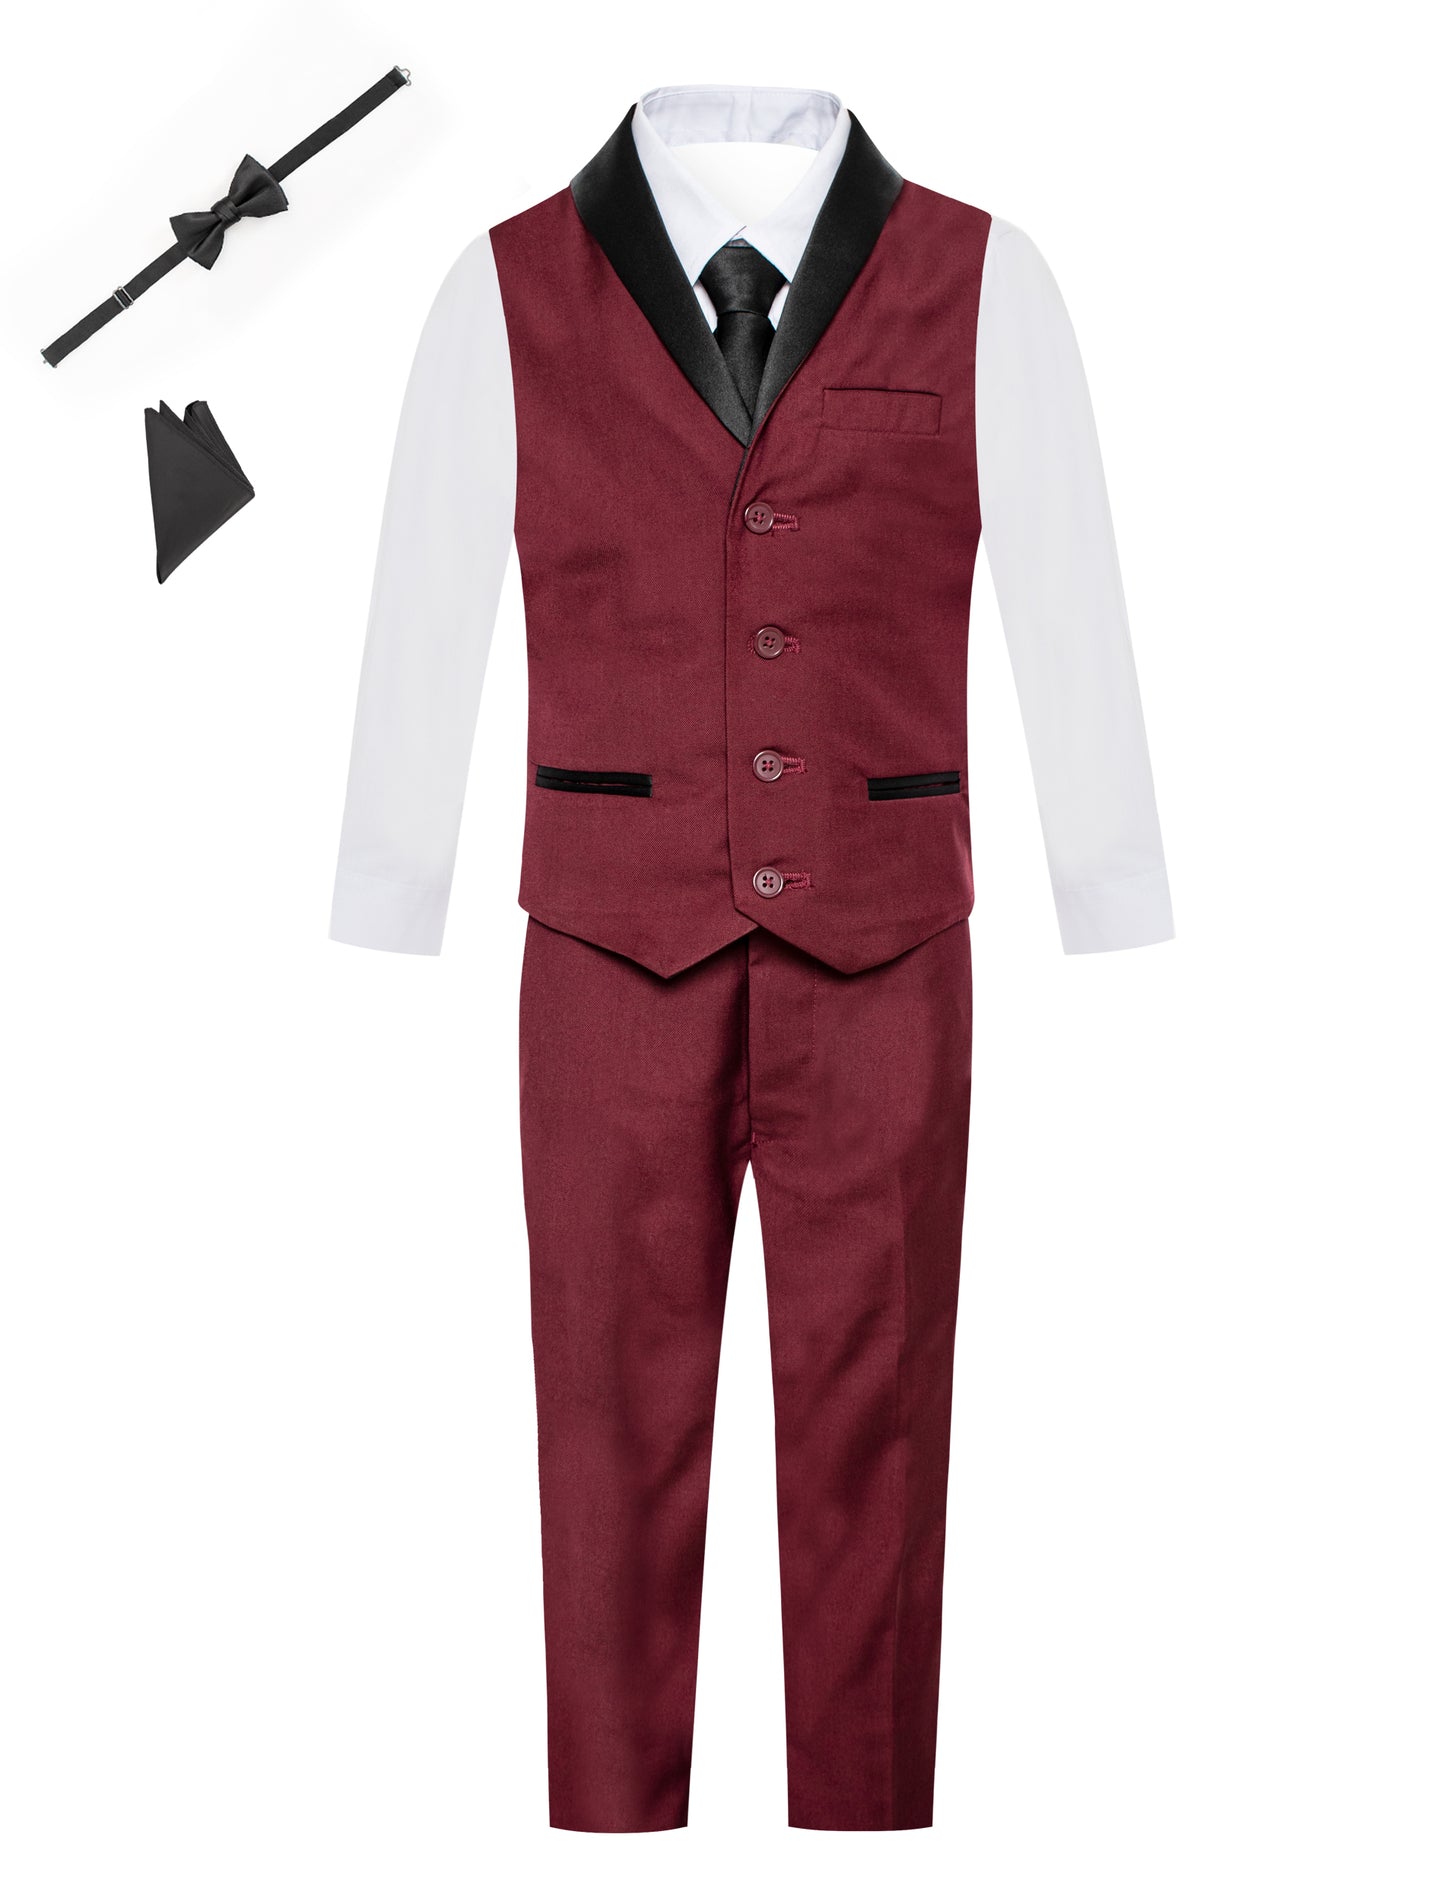 Boys Tuxedo Vest 6 Piece Set: Satin Shawl Lapel Buttoned Vest, Dress Shirt, Pants, Tie, Bowtie, Pocket Square